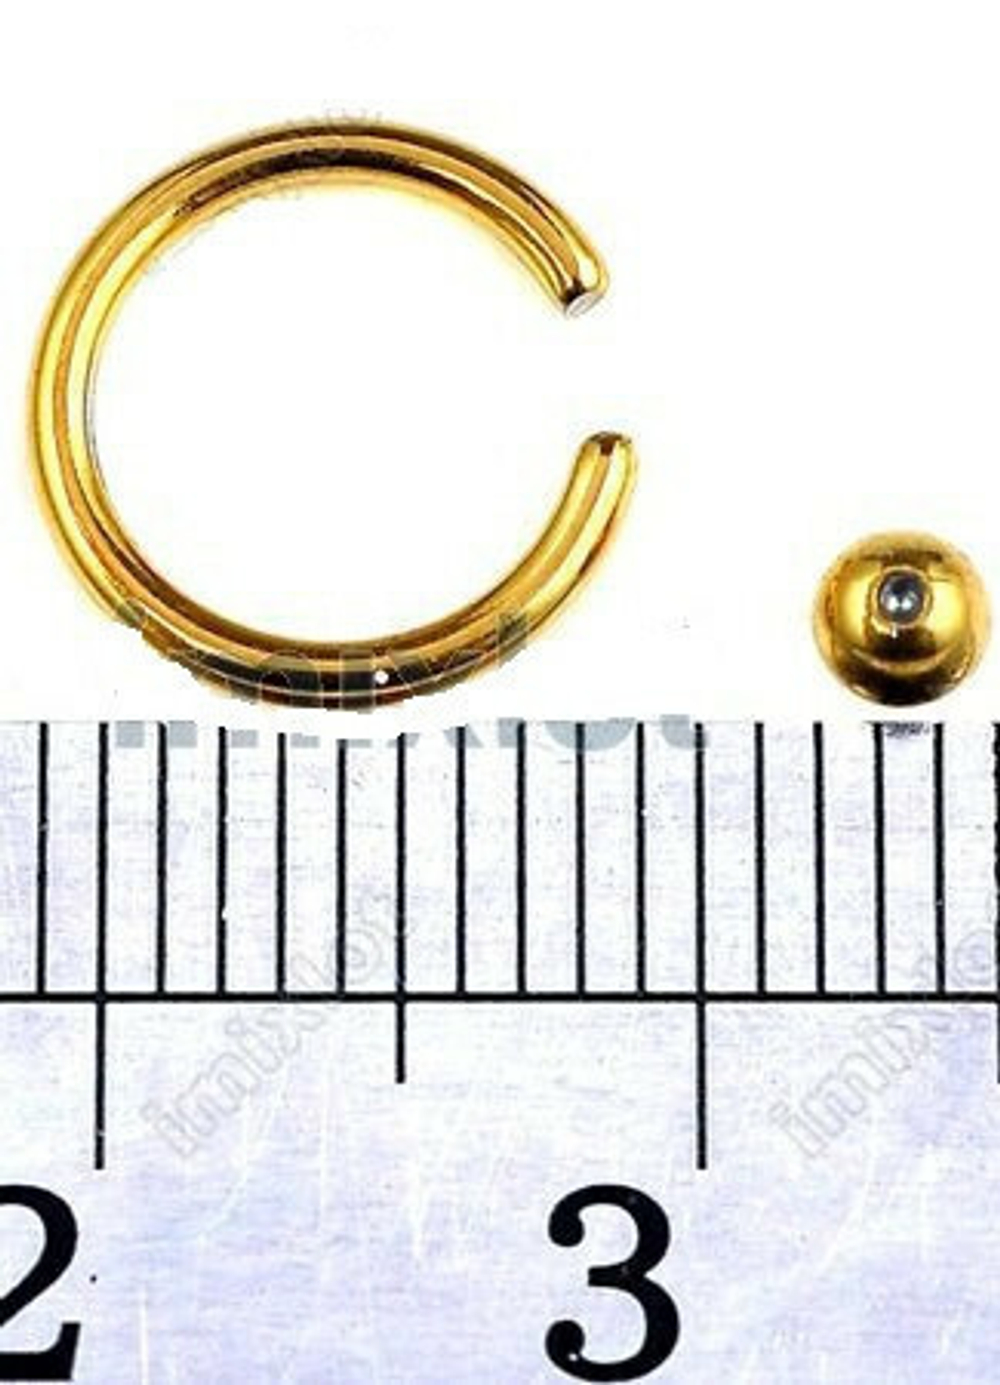 Кольцо сегментное диаметр 8 мм, шарик 3 мм, толщина 1,2мм для пирсинга. Медицинская сталь, позолота.